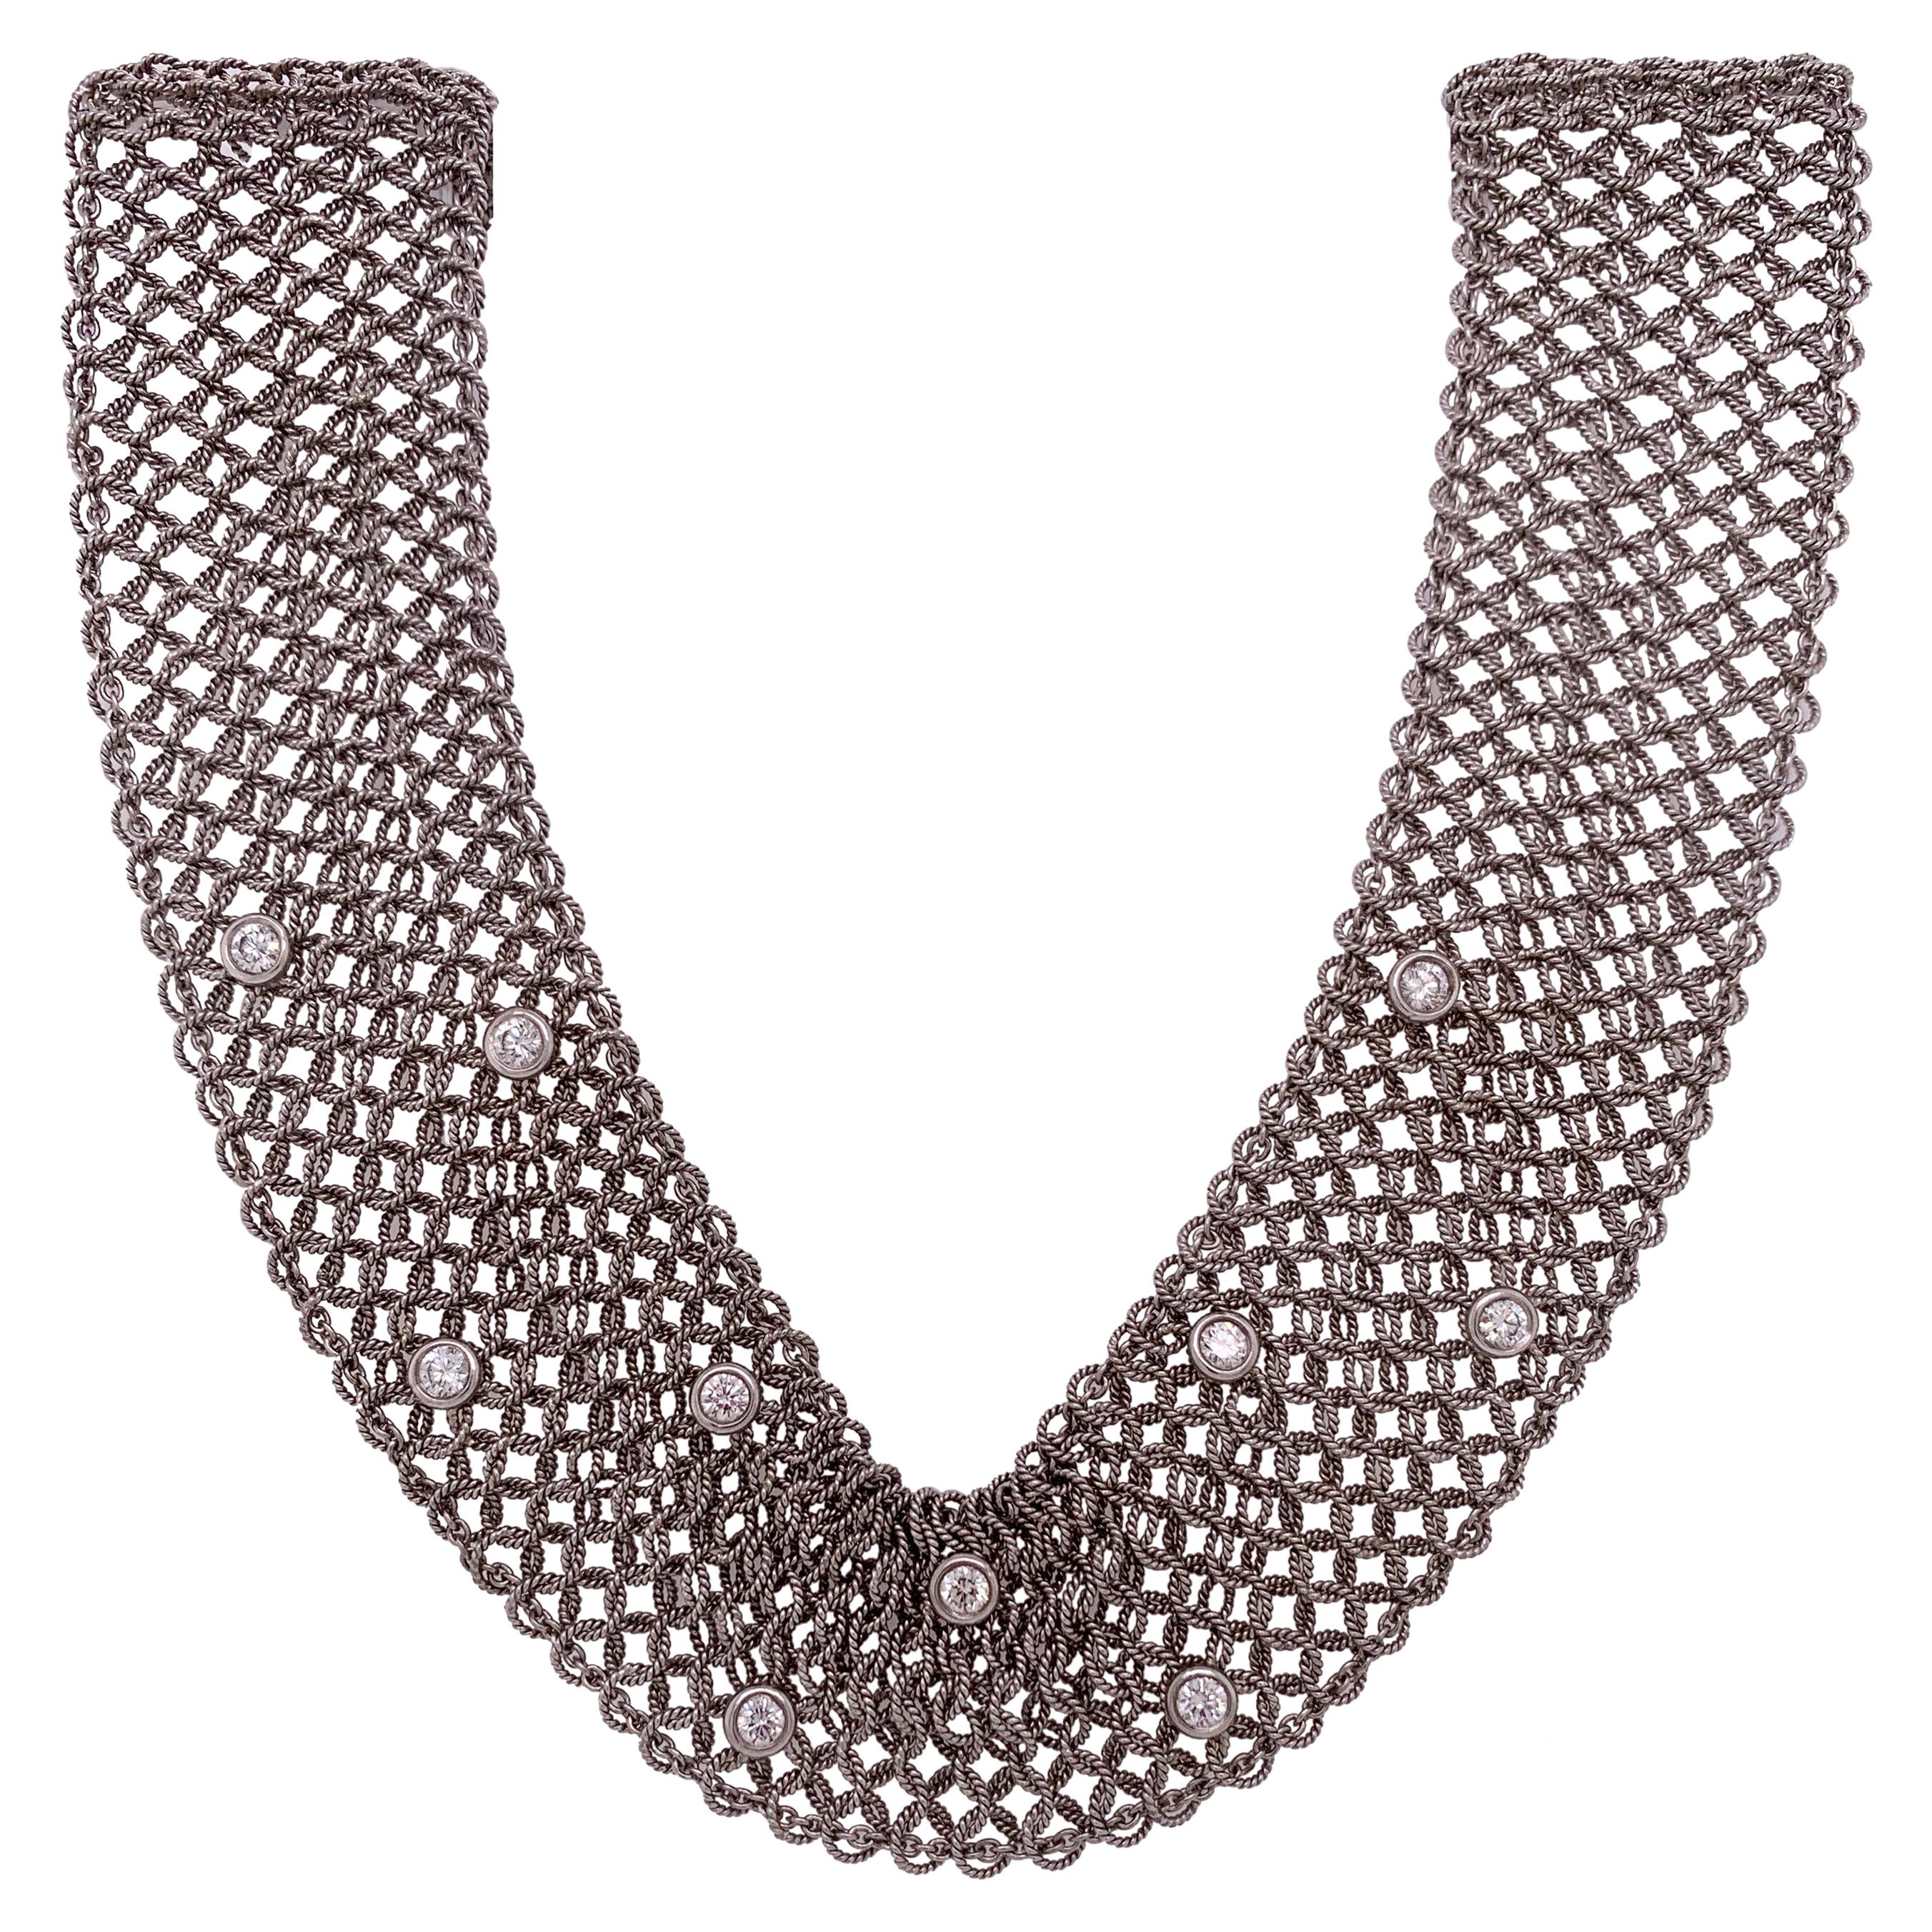 Nachlass Art Deco-Stil 18 Karat Weißgold und Diamant-Netz-Halskette